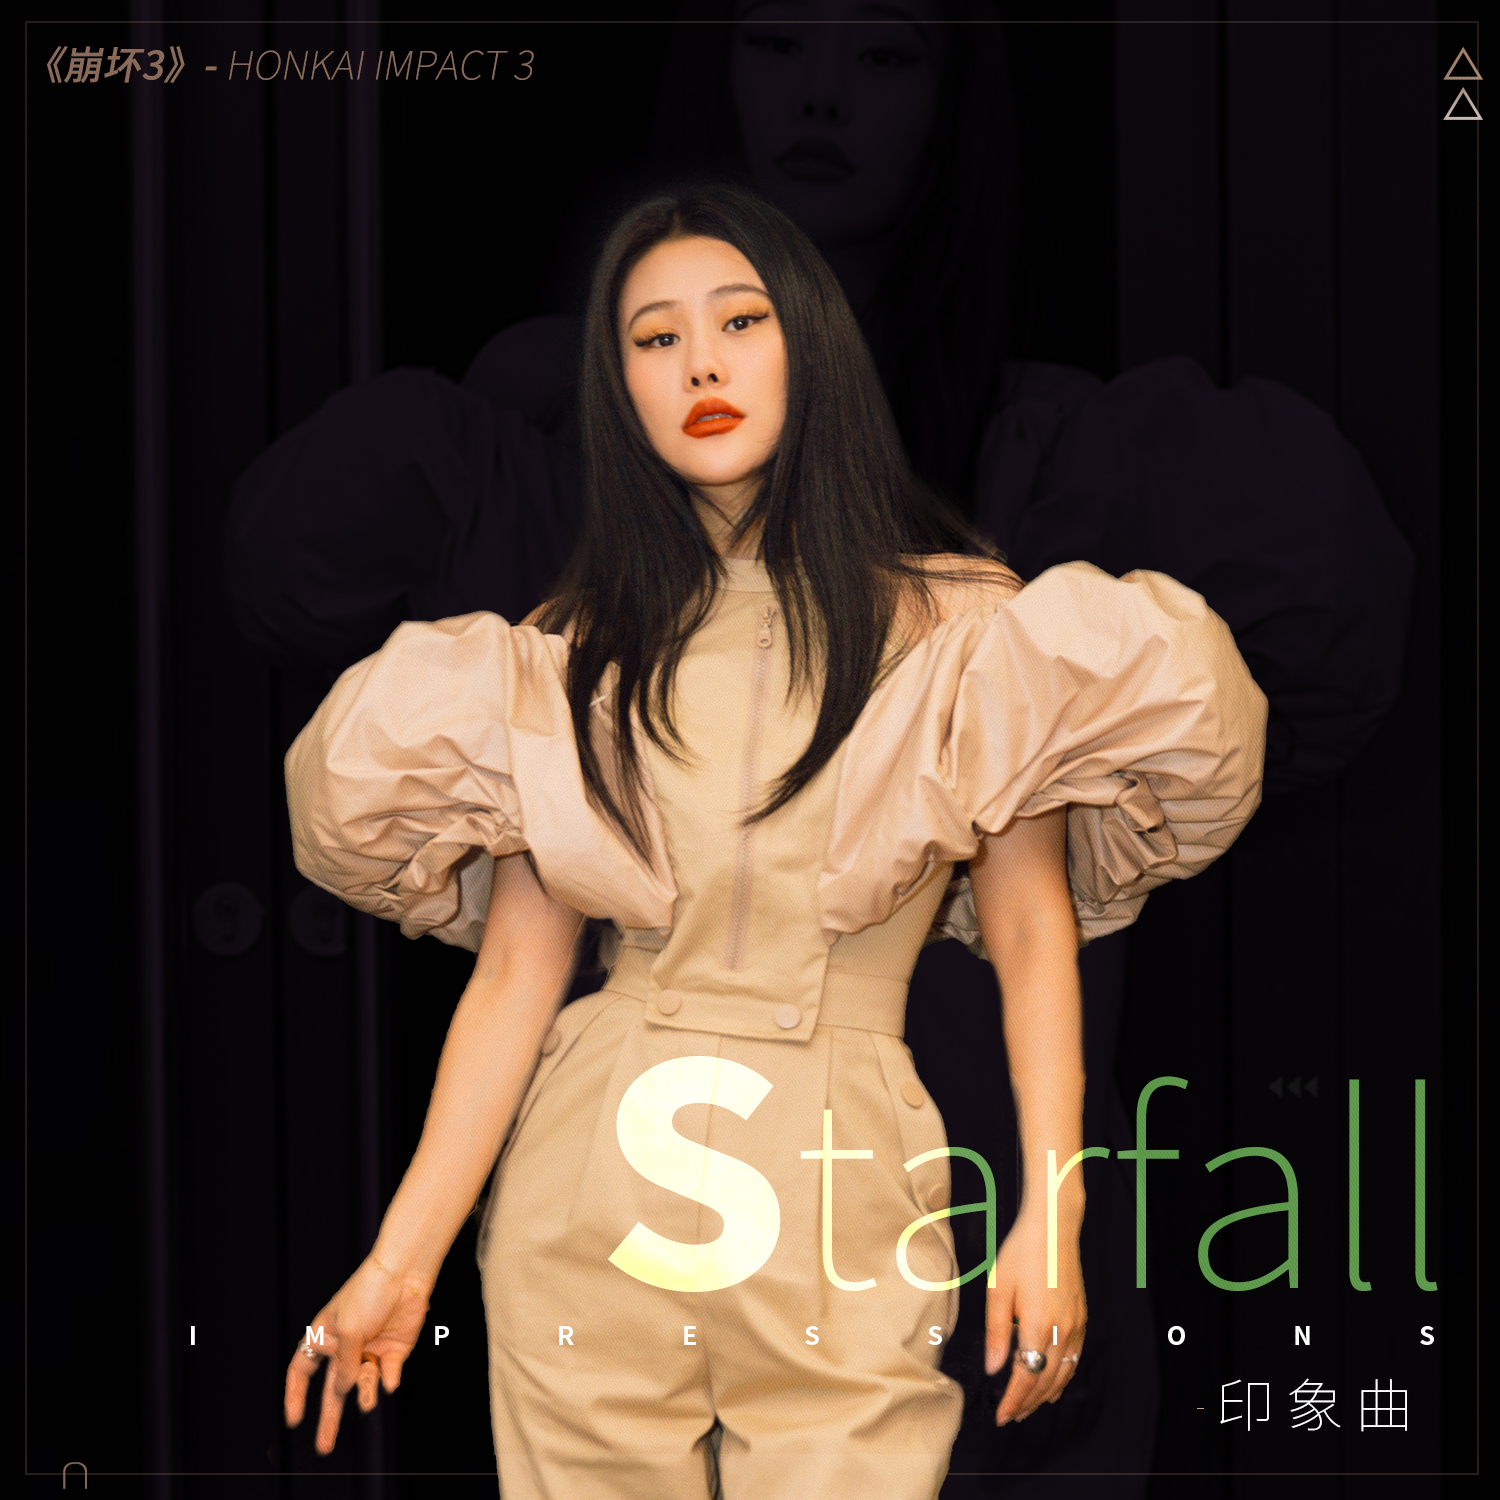 【图3-袁娅维演唱崩坏3印象曲《Starfall》】.jpg